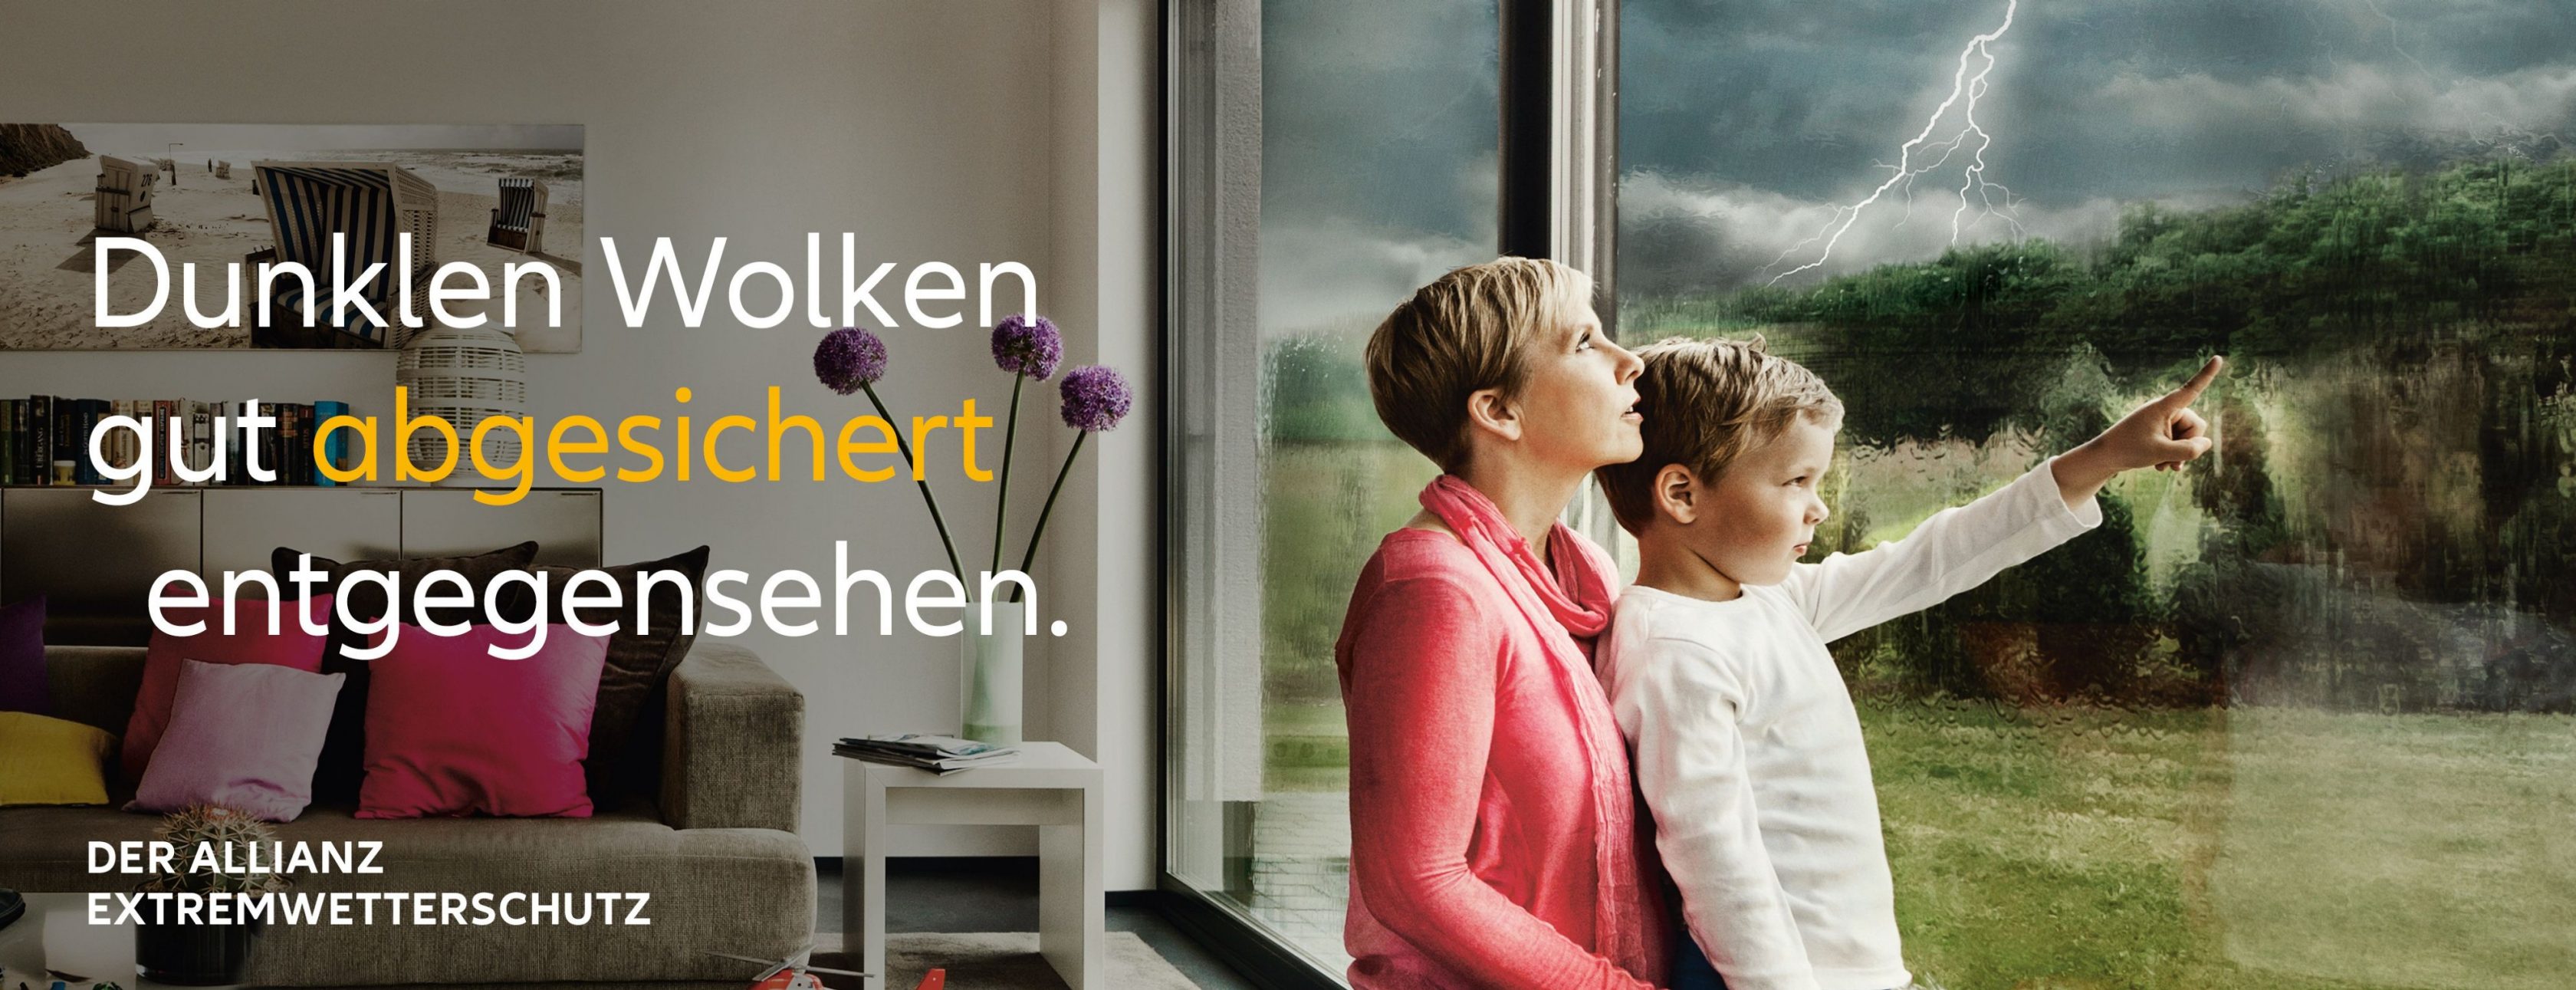 Allianz Versicherung Andreas Feder Berlin - Extremwetterschutz Dunkle Wolken 